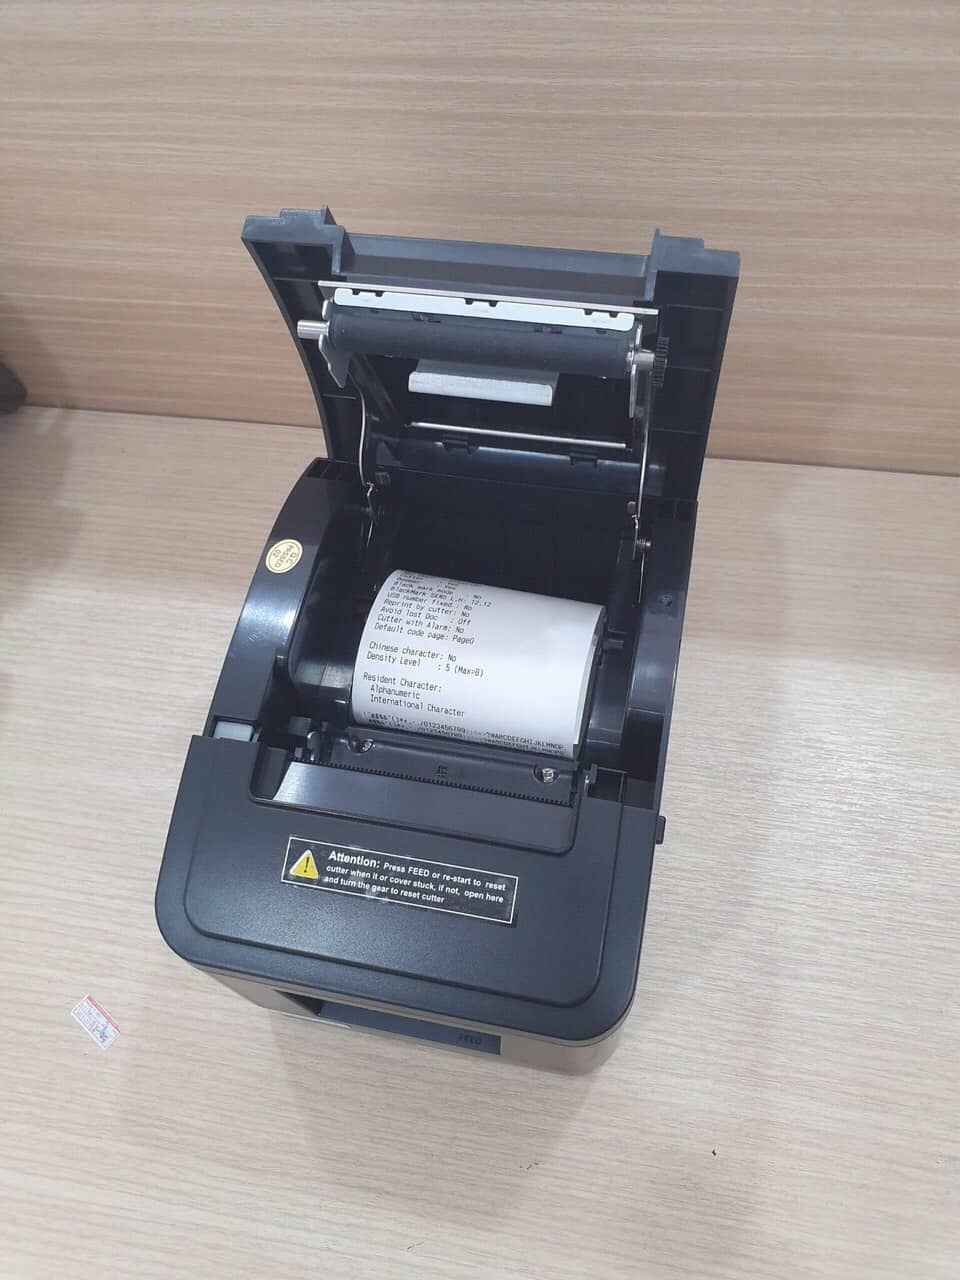 Máy in hóa đơn Xprinter V320N